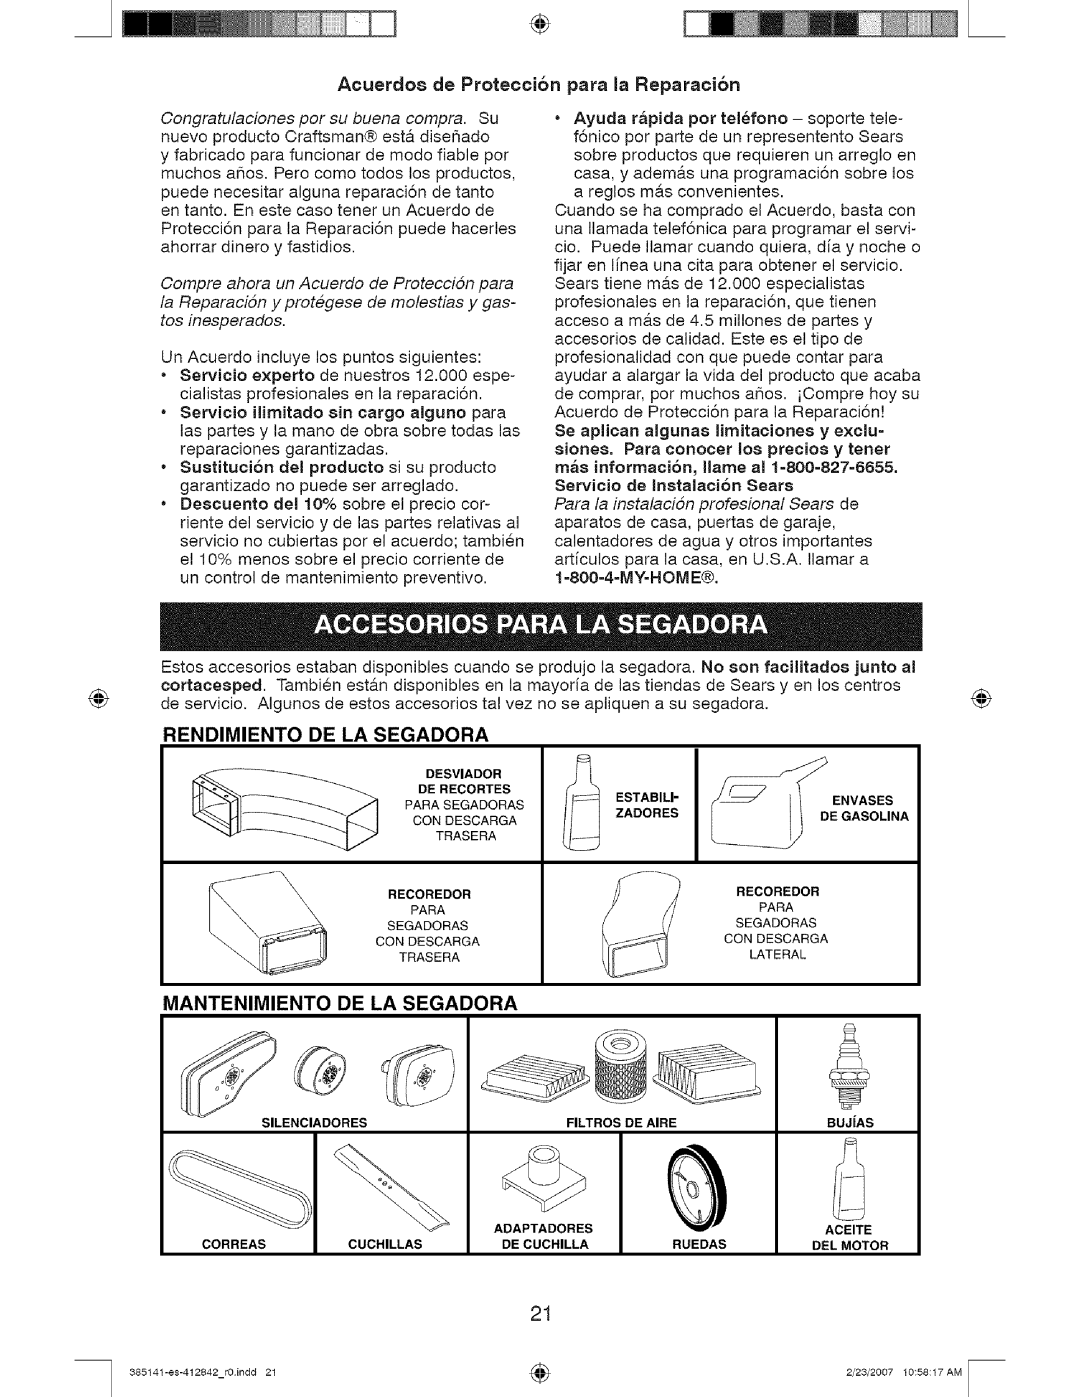 Craftsman 385141, 917 manual Acuerdo8 de Proteccion para la Reparacion, Rendimiento, De La Segadora, Mantenimiento 